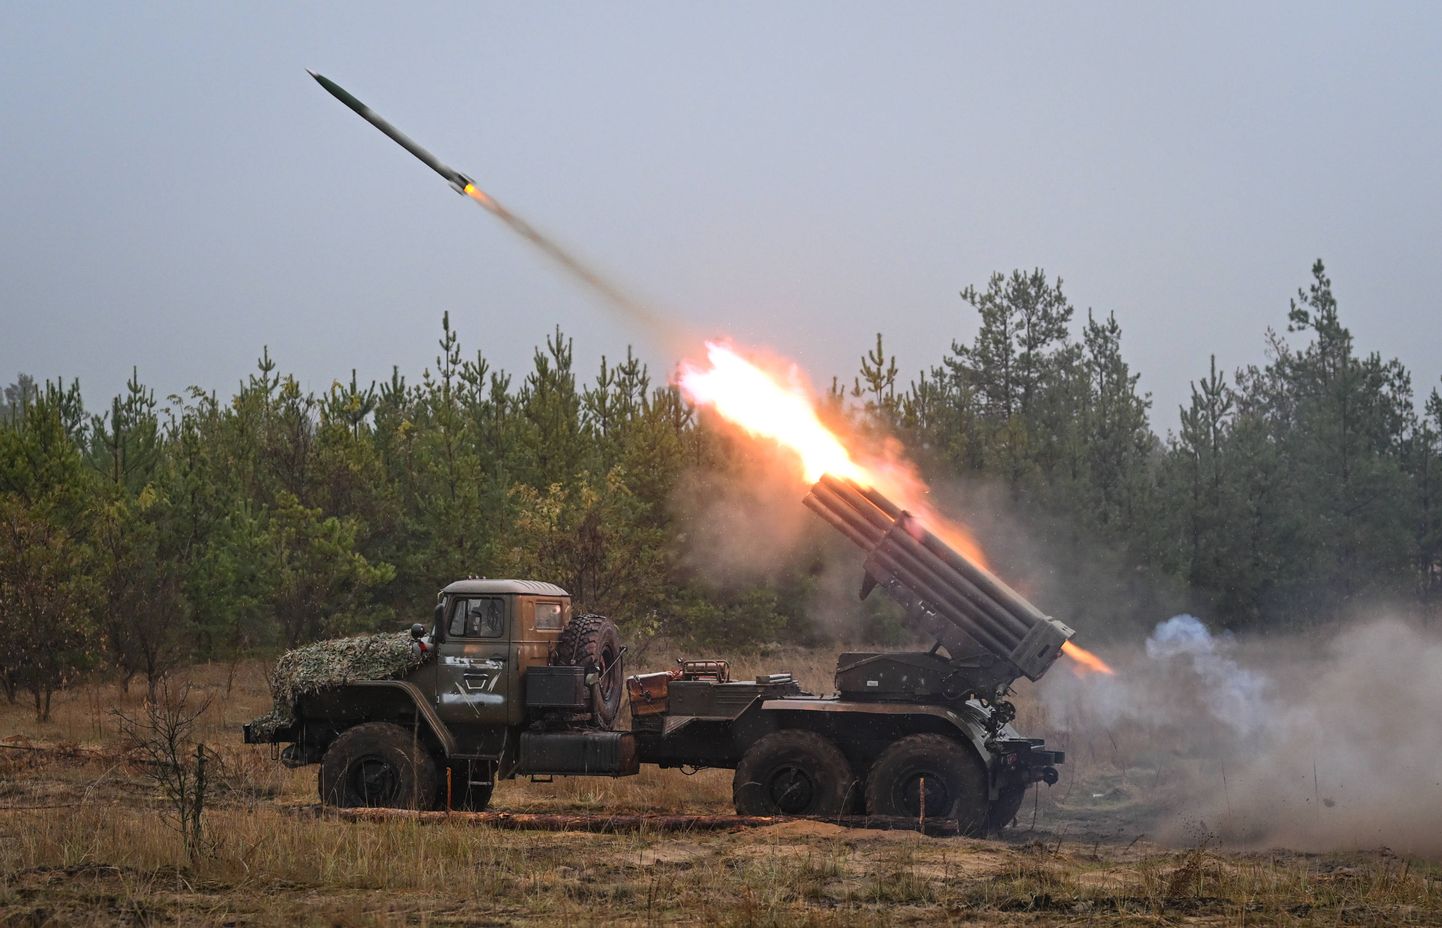 Vene väed tulistavad BM-21 Gradi raketiheitjast Ukraina suunas teadmata kohast Venemaal.